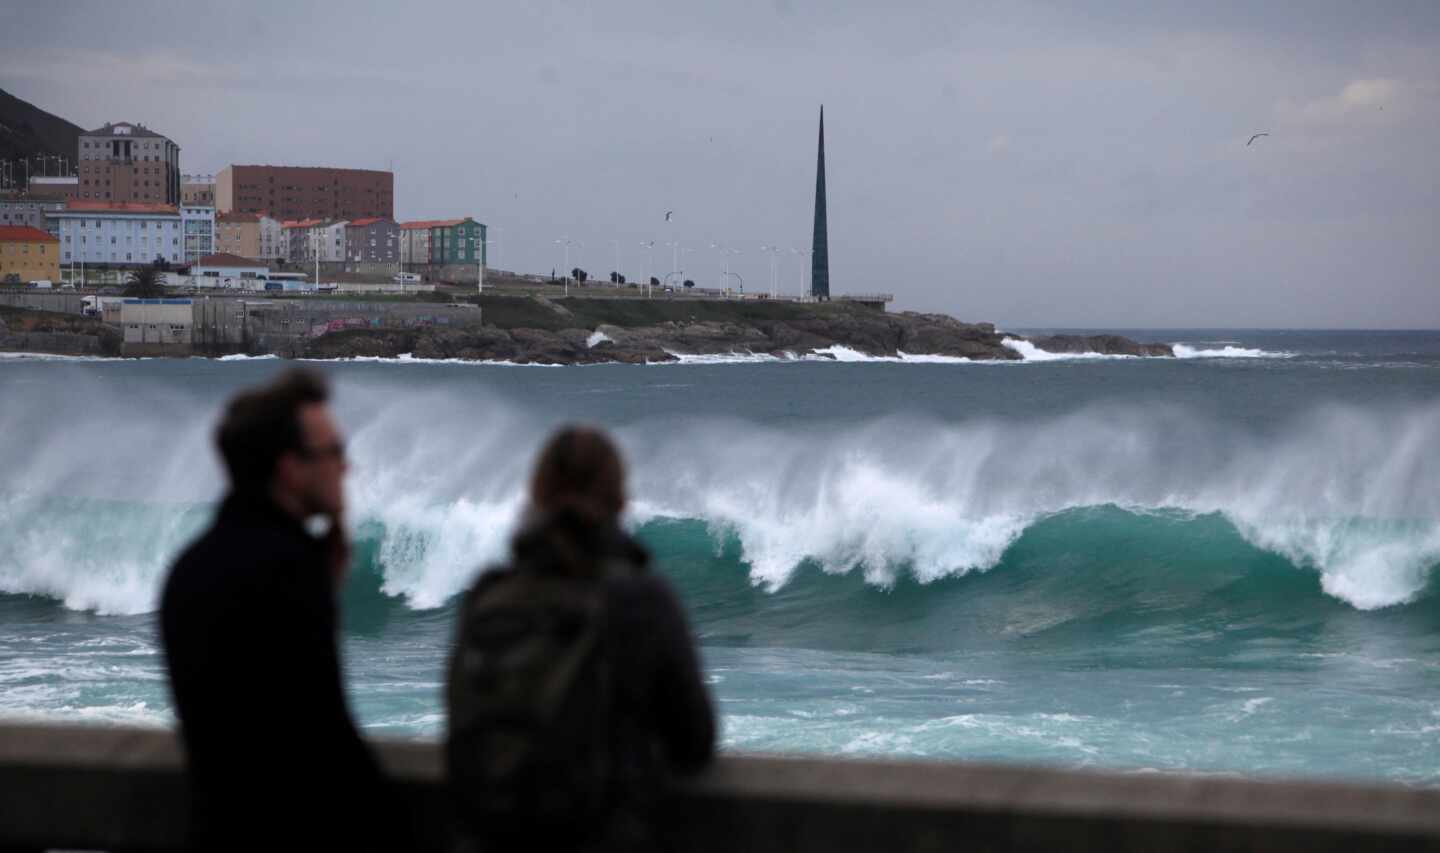 Alerta naranja en la costa gallega con vientos de 107 km/h y olas de 5 metros